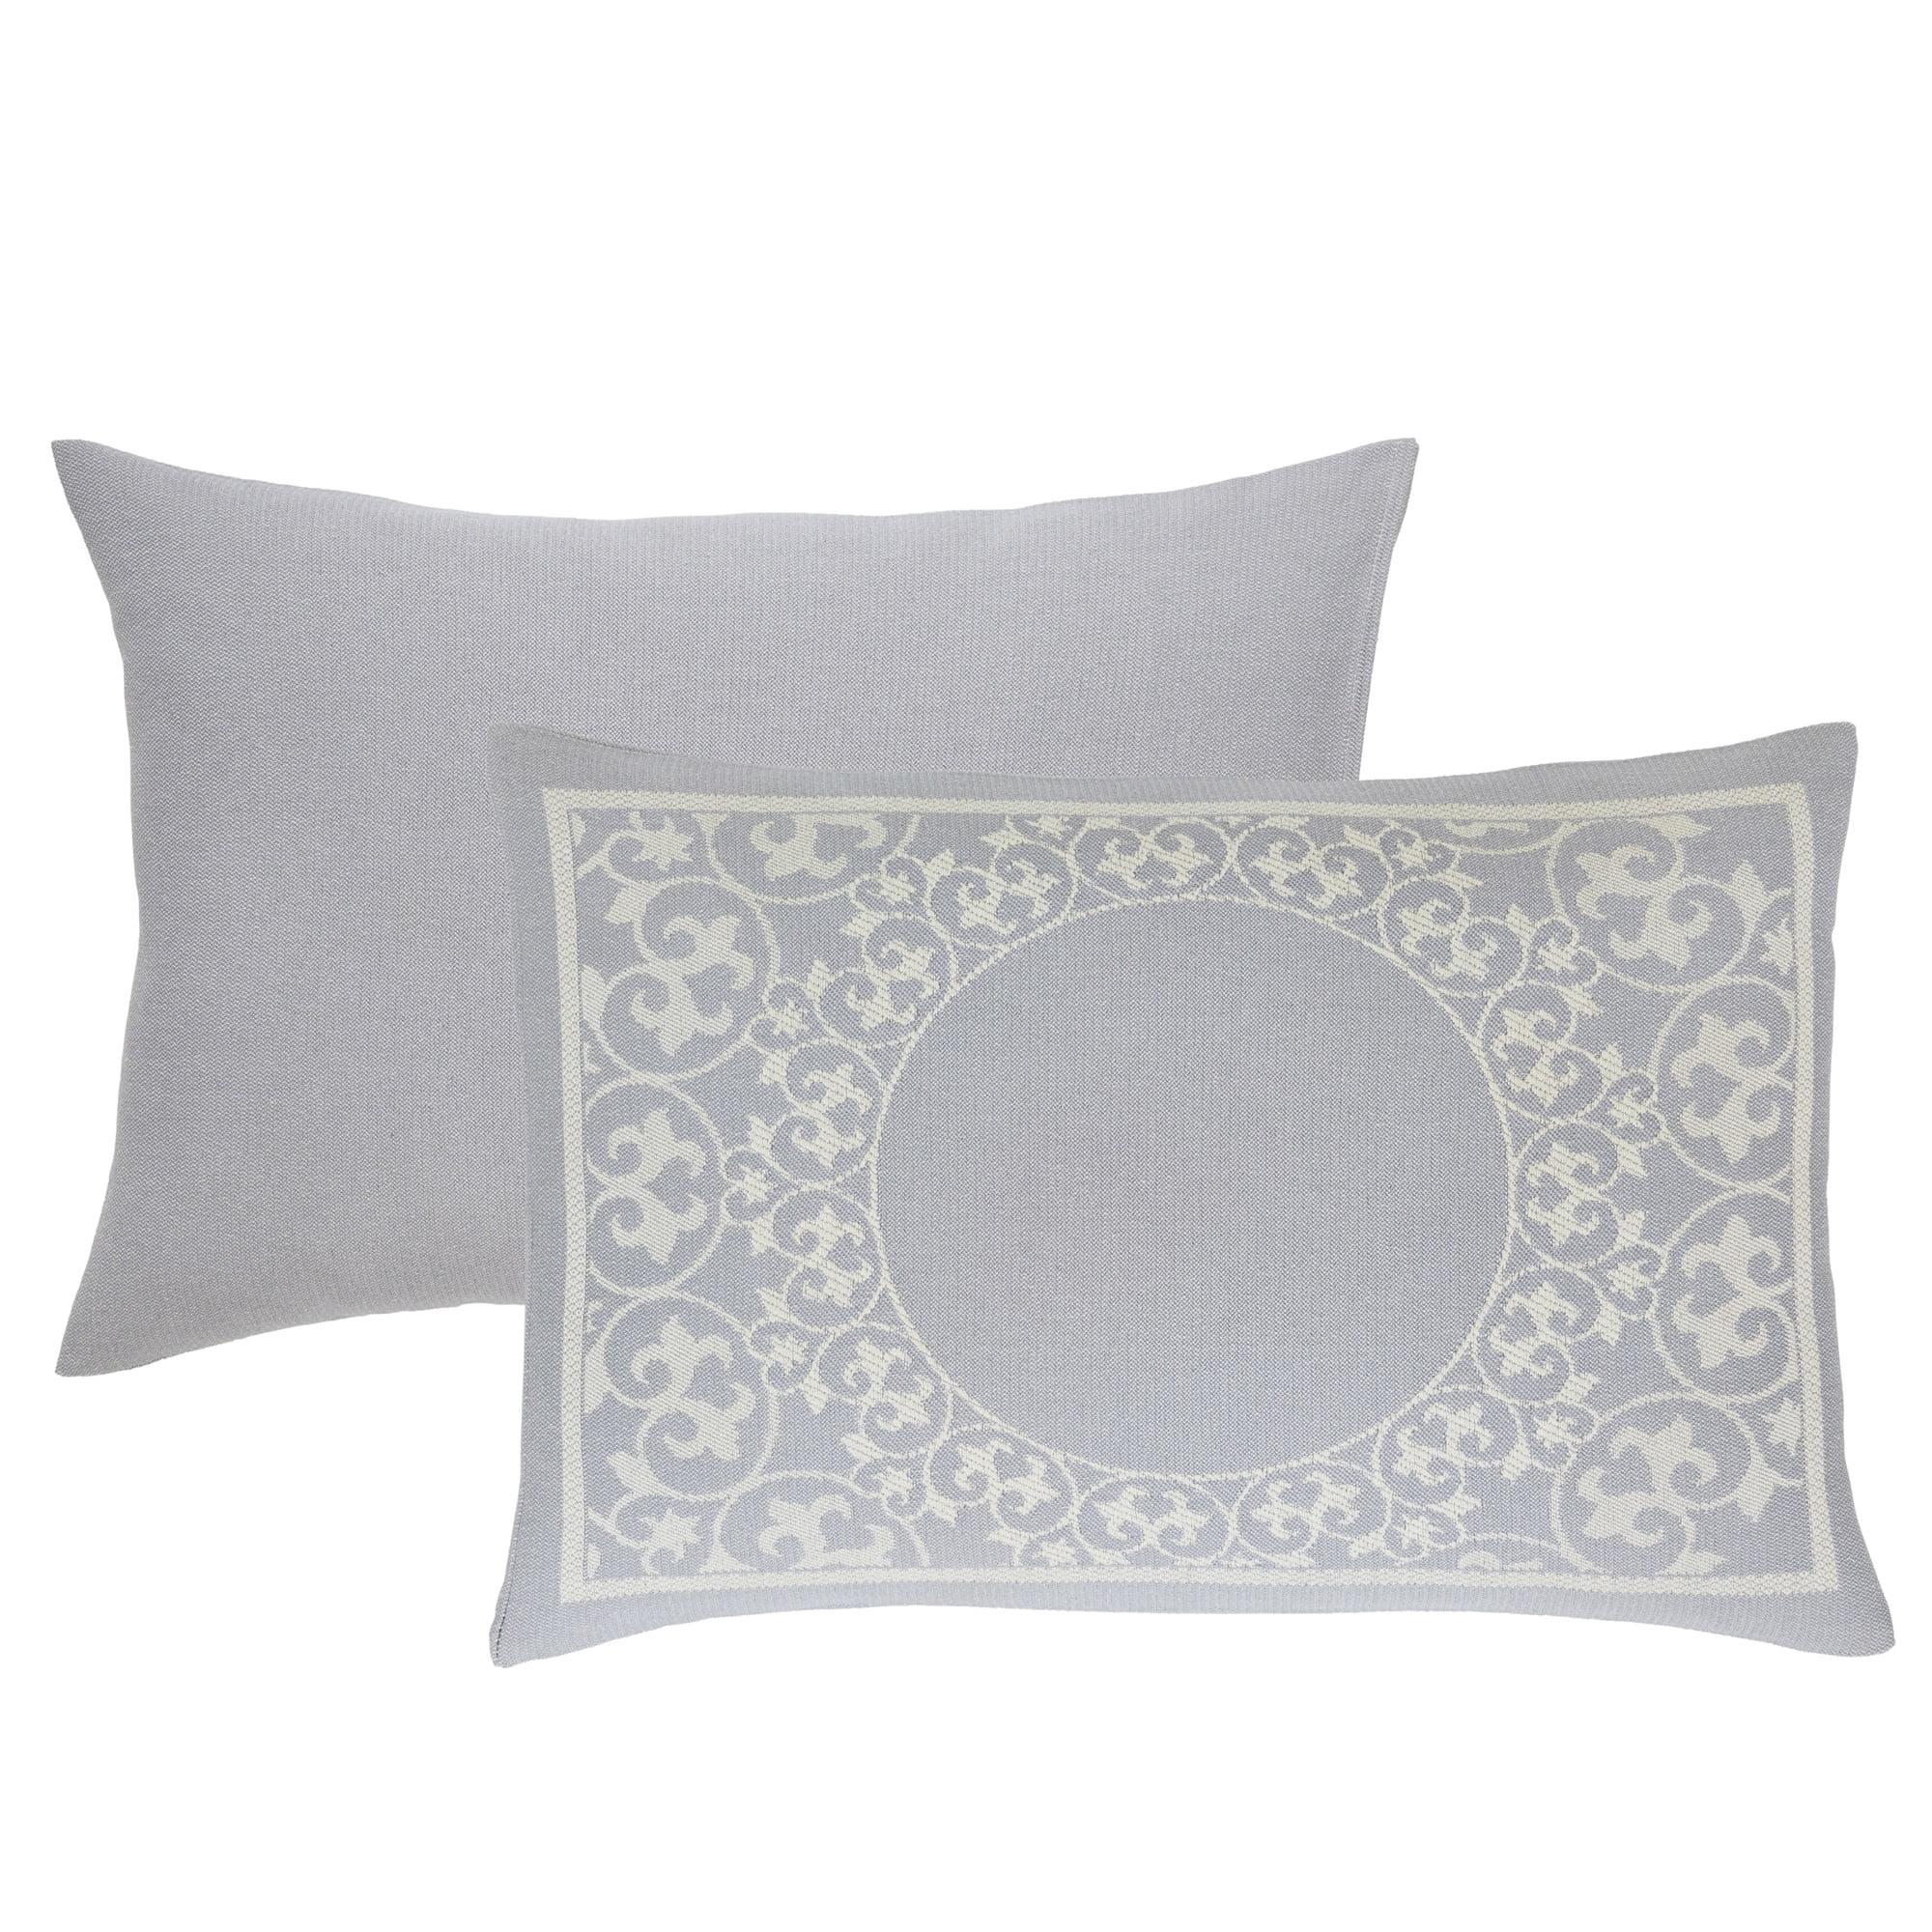 Slate Blue King Size Cotton-Polyester Jacquard Bedspread Set